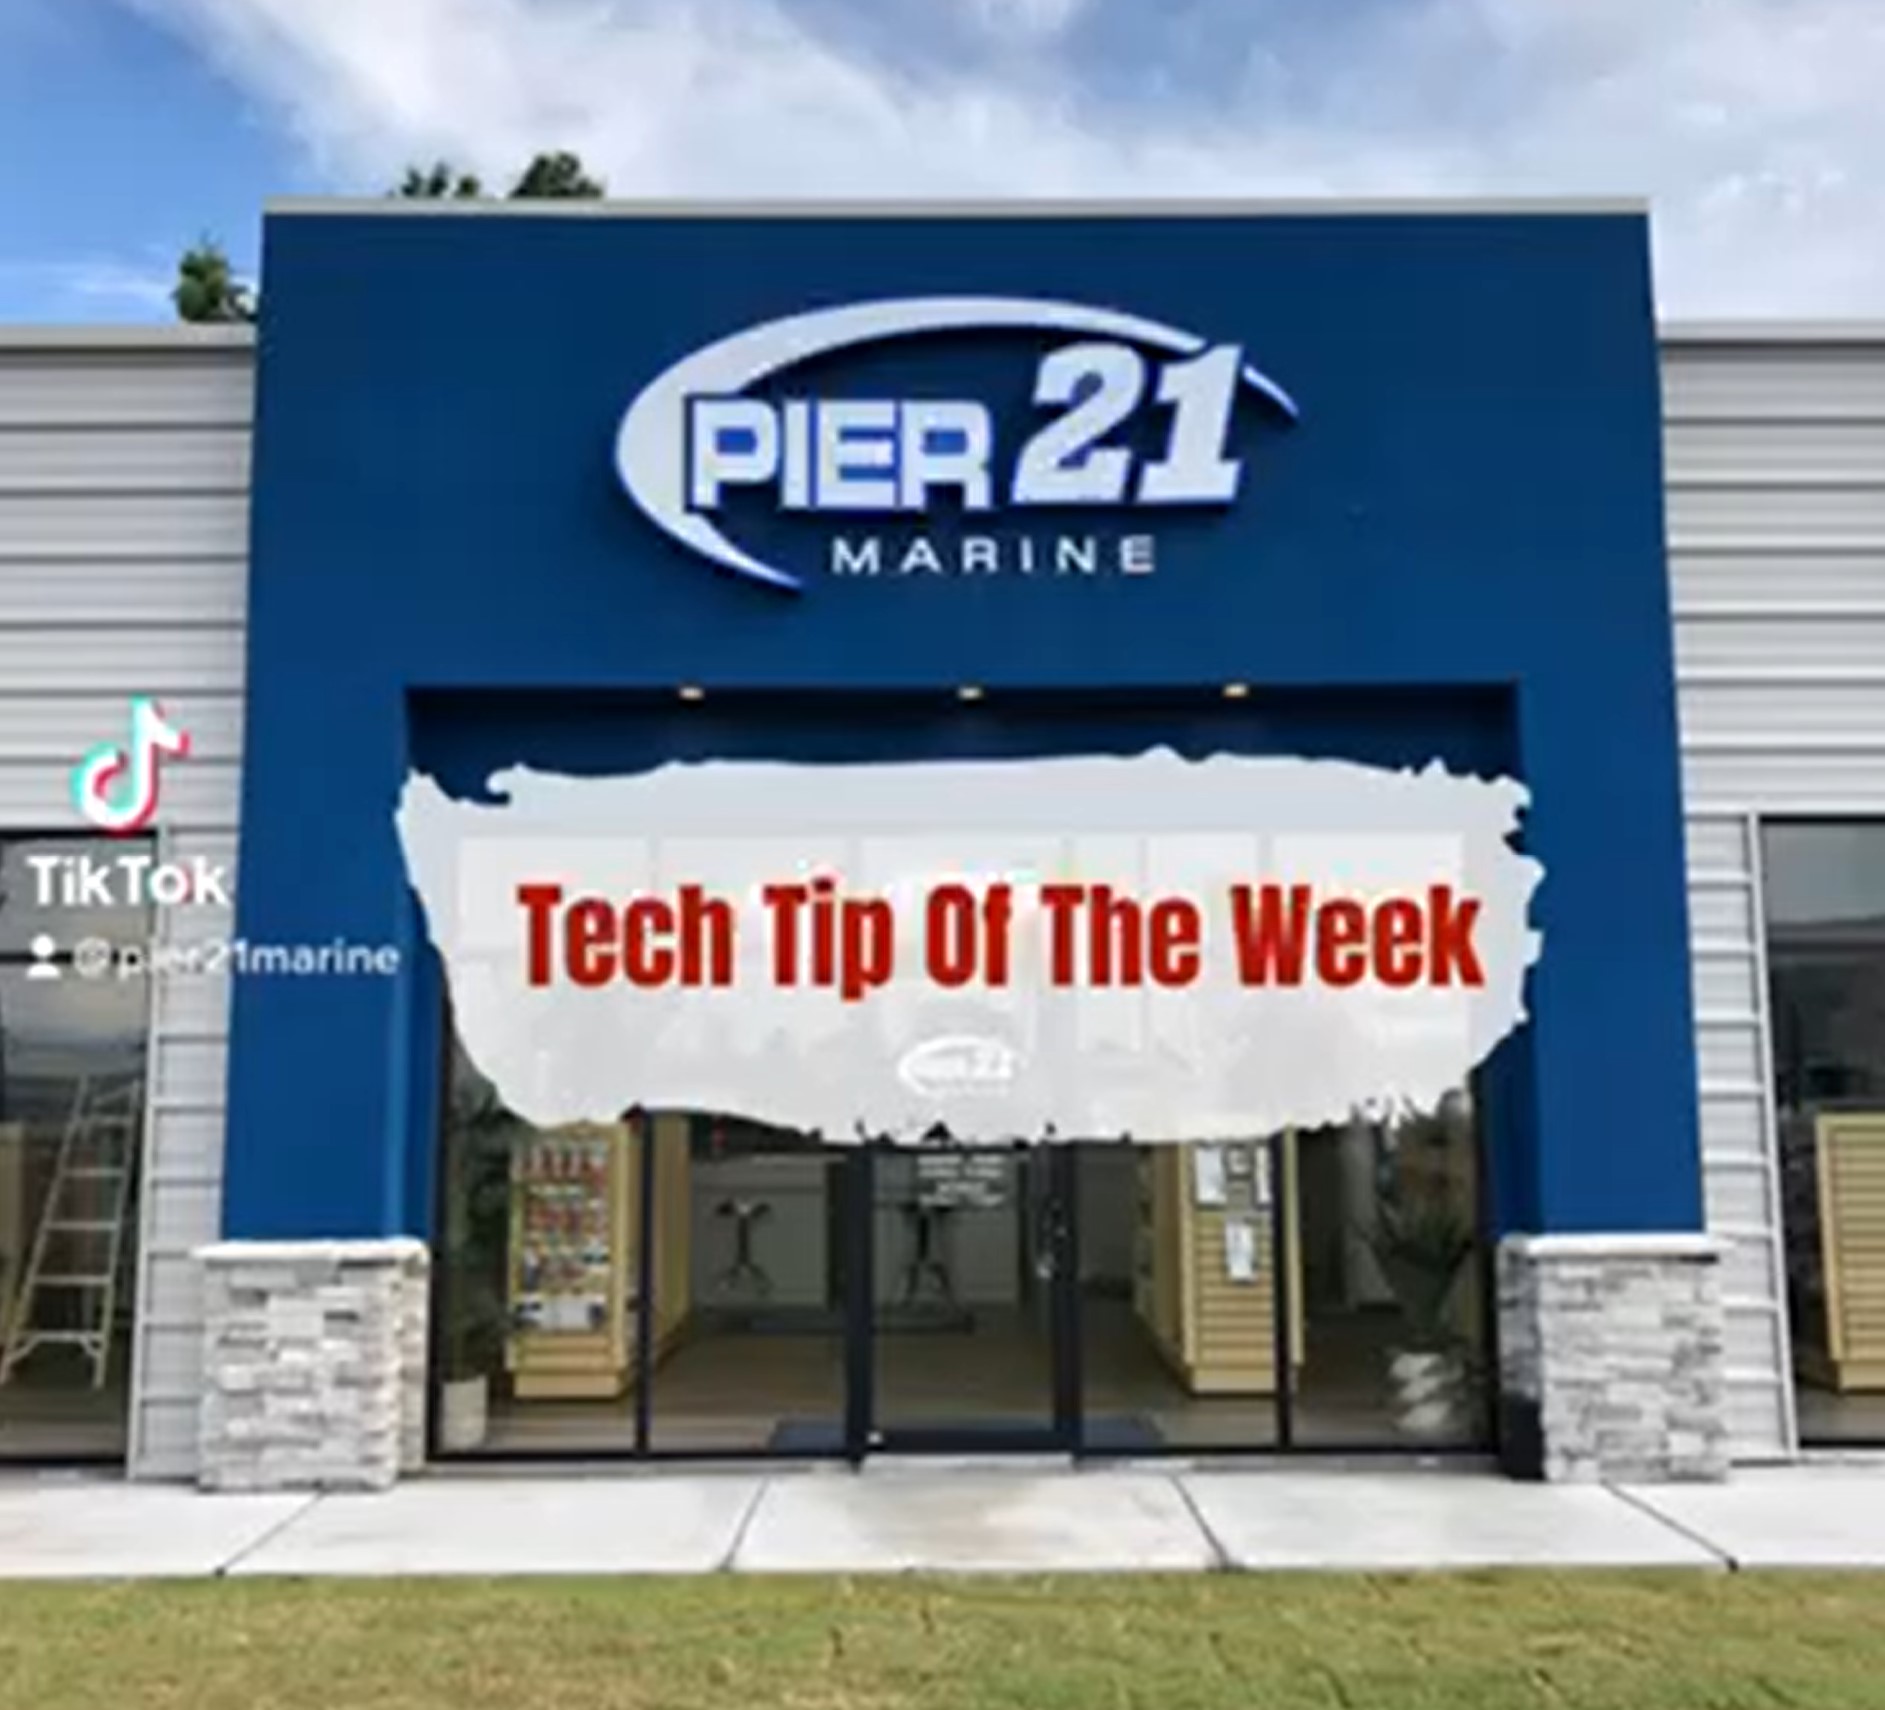 Hydraulic Fluid Leaks, Tech Tip of the week | Pier 21 Marine